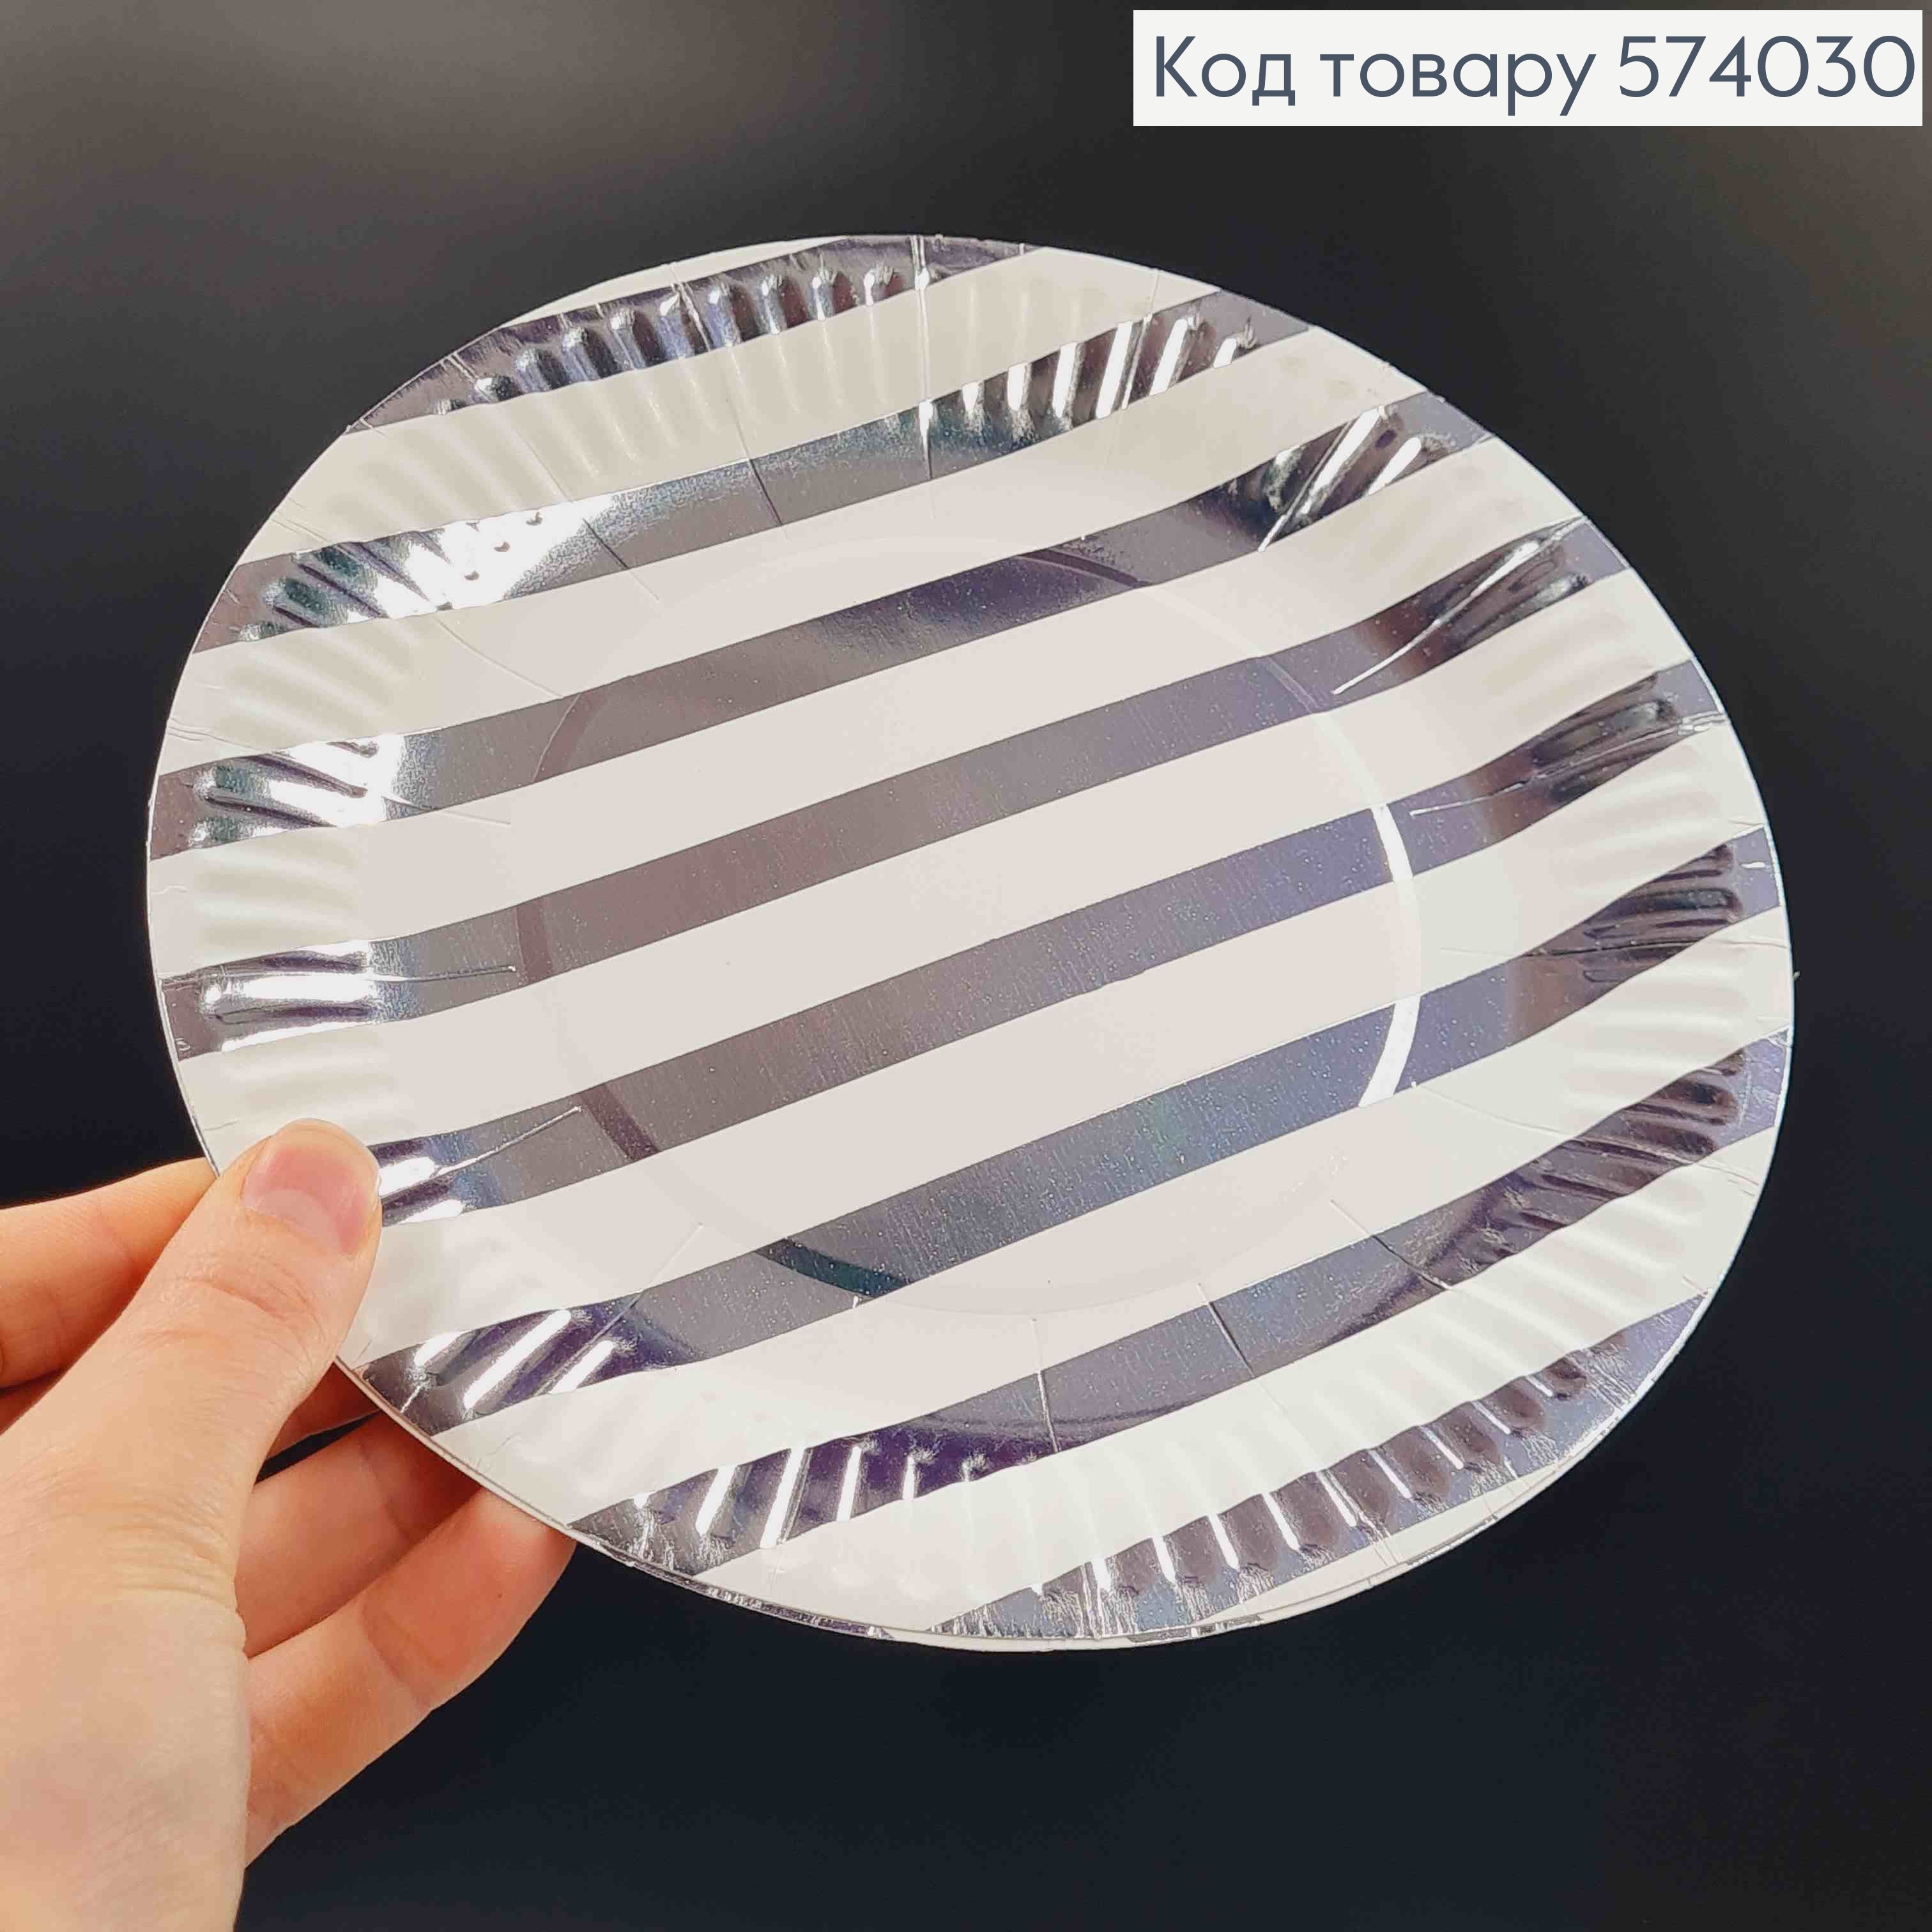 Набор бумажных тарелок 18см, Белого цвета в серебряные линии 10шт/уп 574030 фото 2